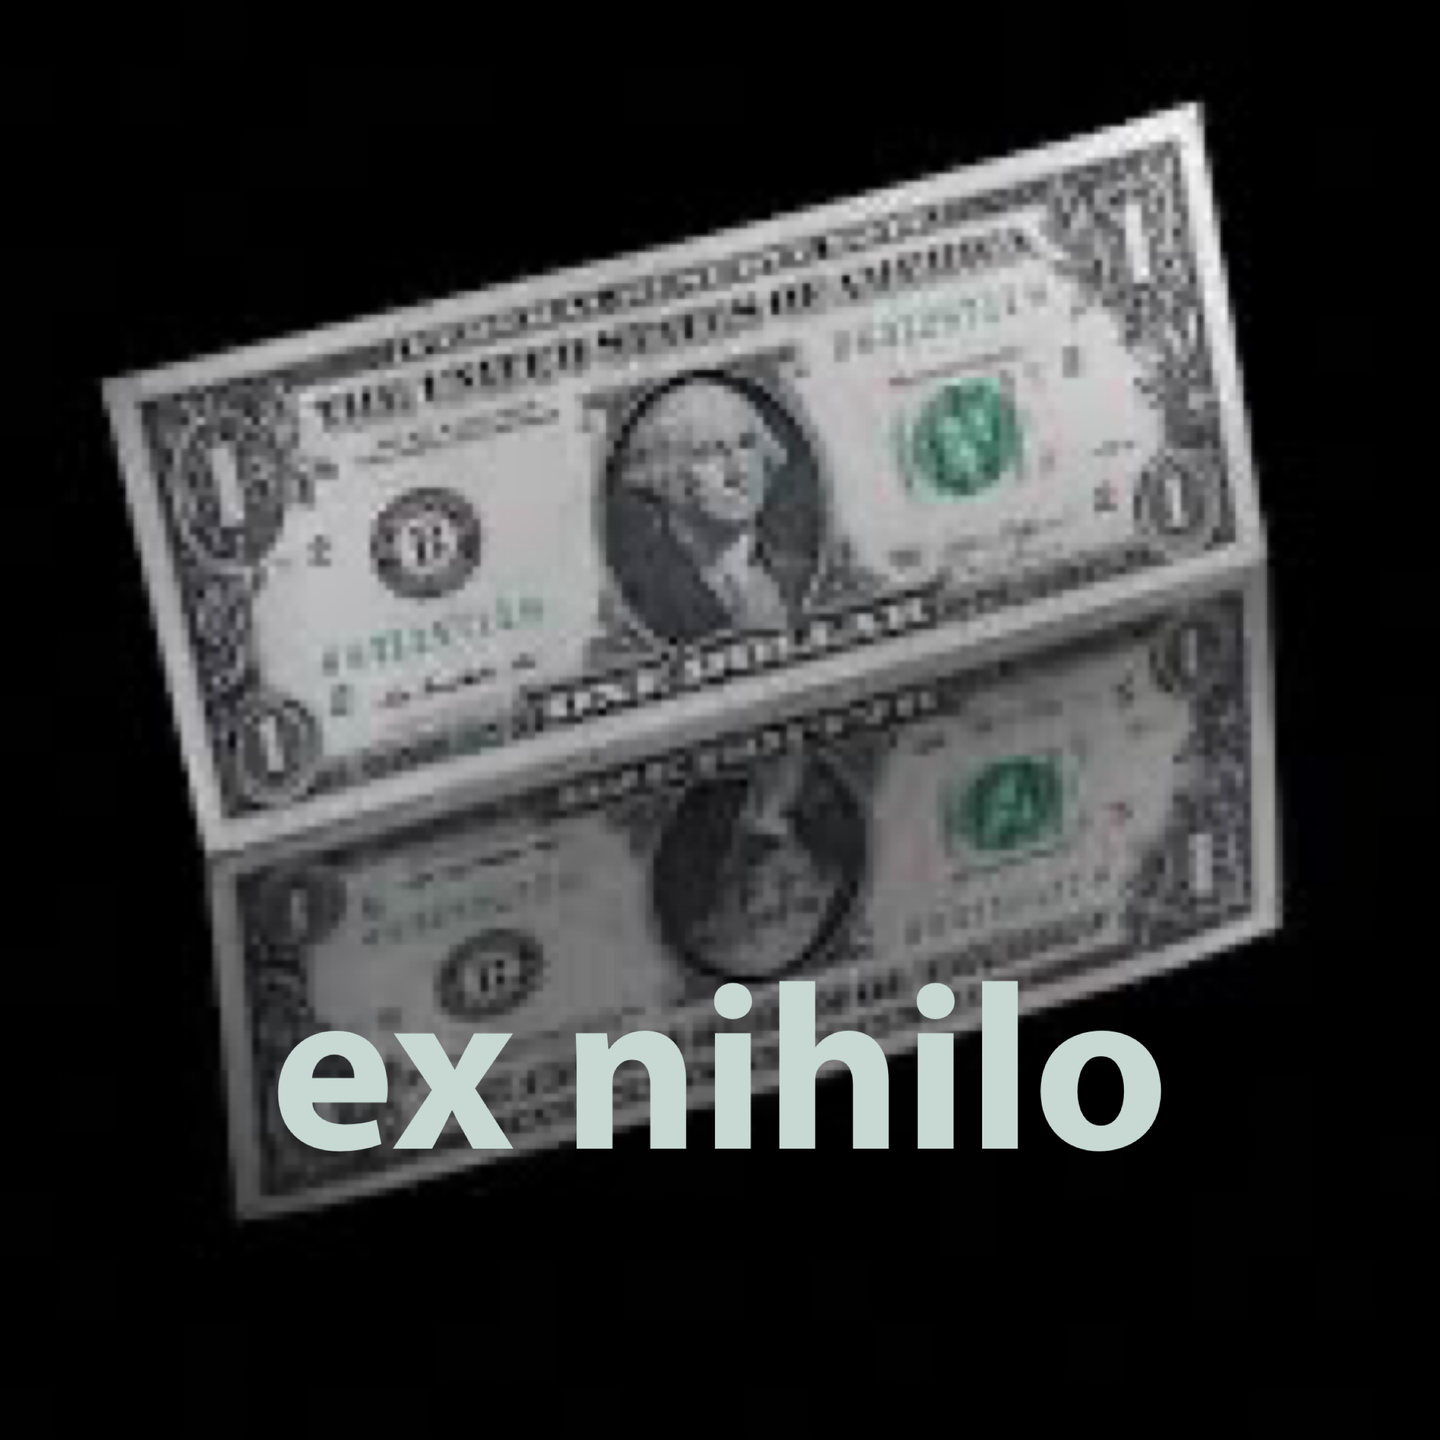 421698
ex nihilo